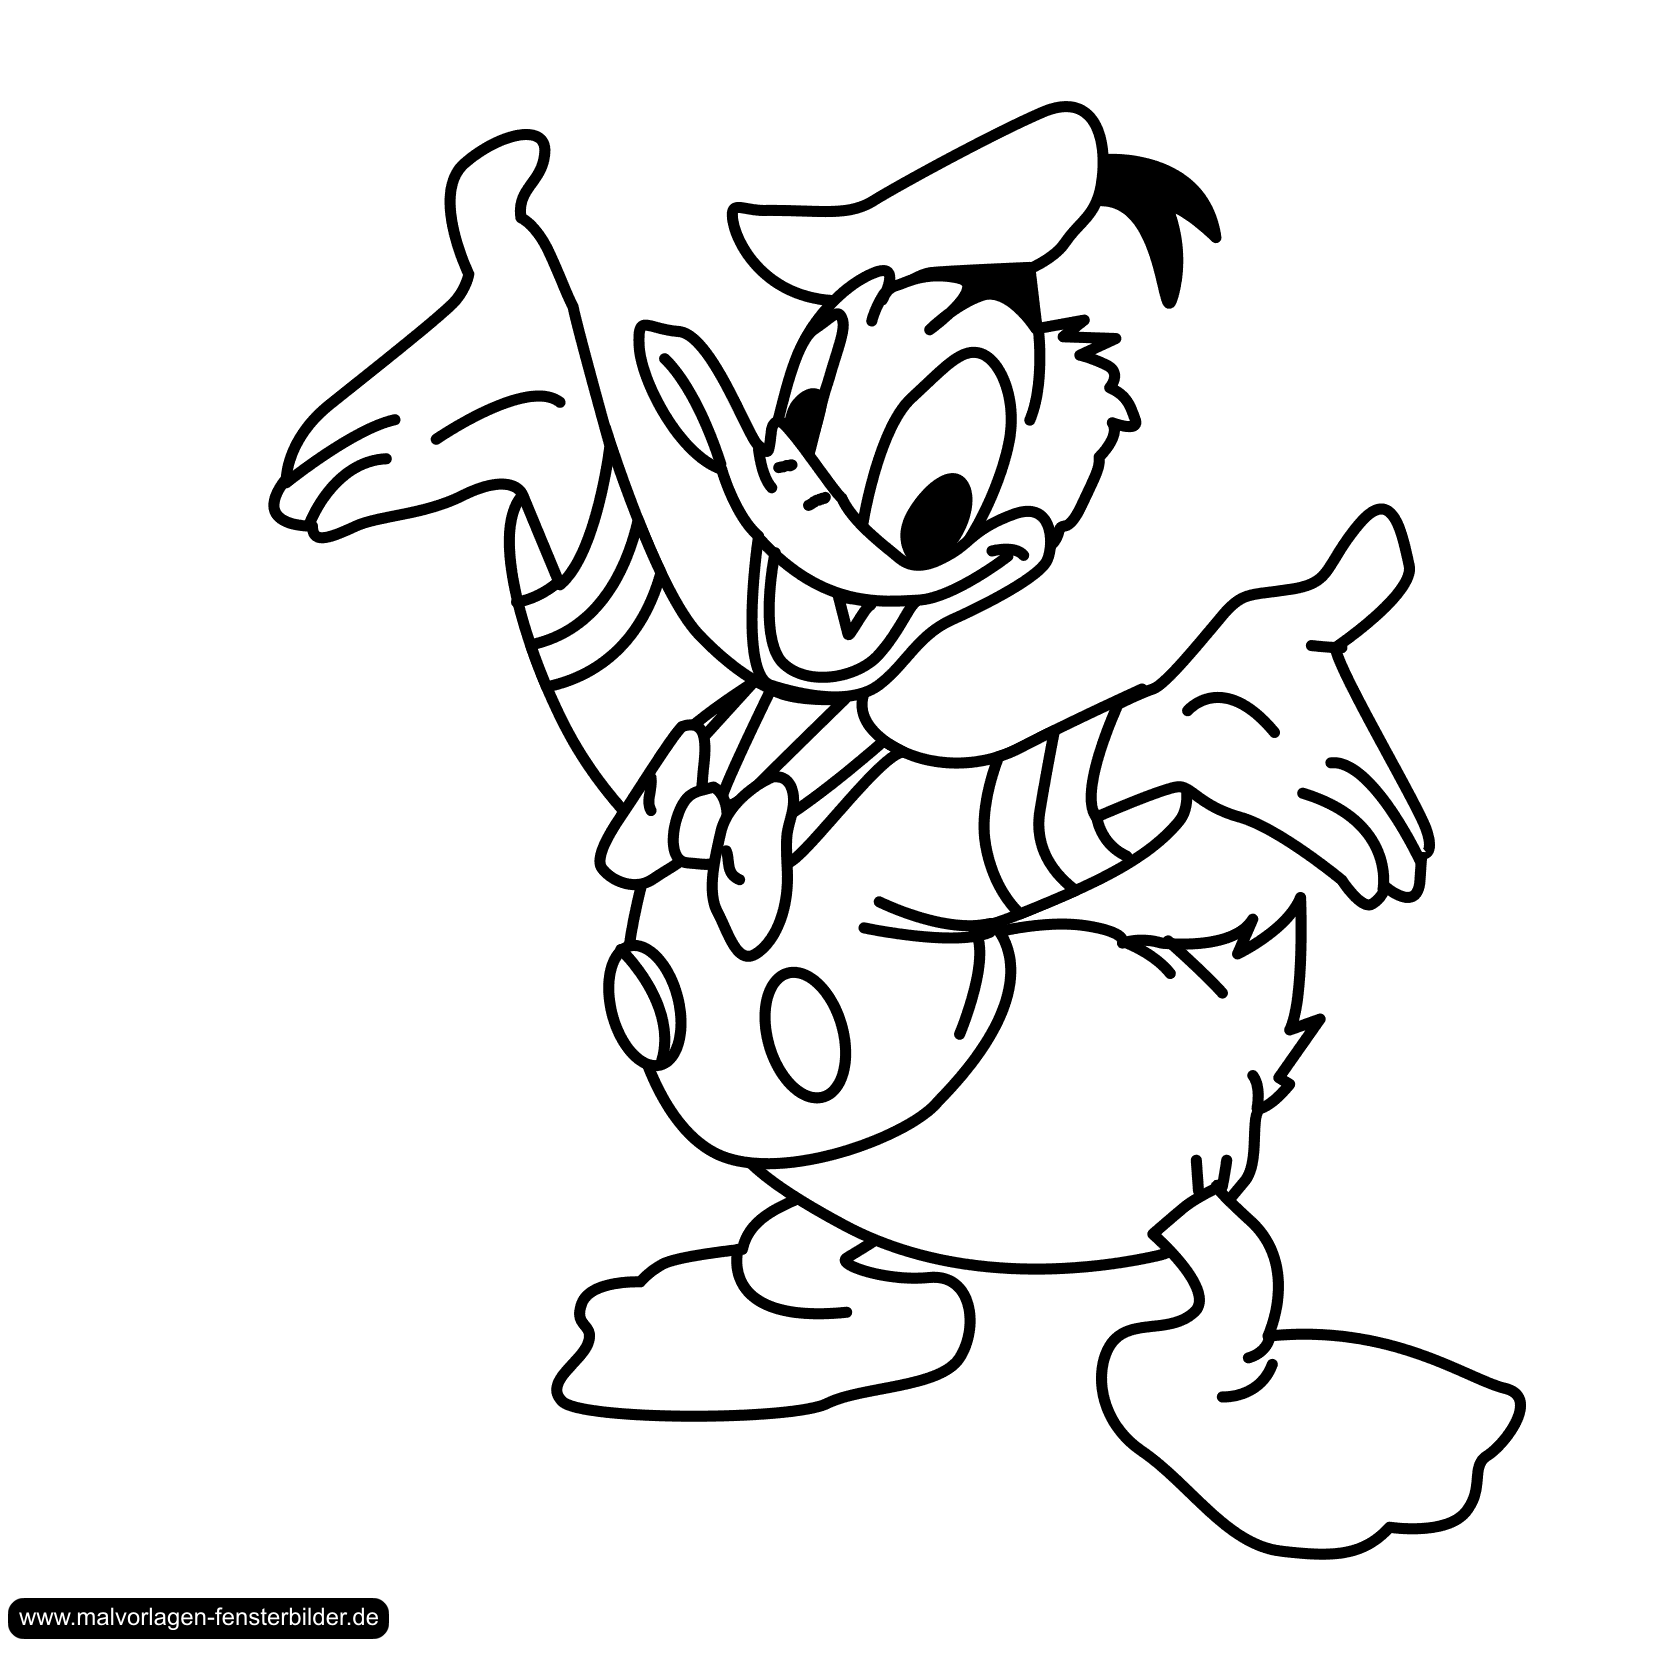 Coloriage donald duck gratuit - dessin a imprimer #2